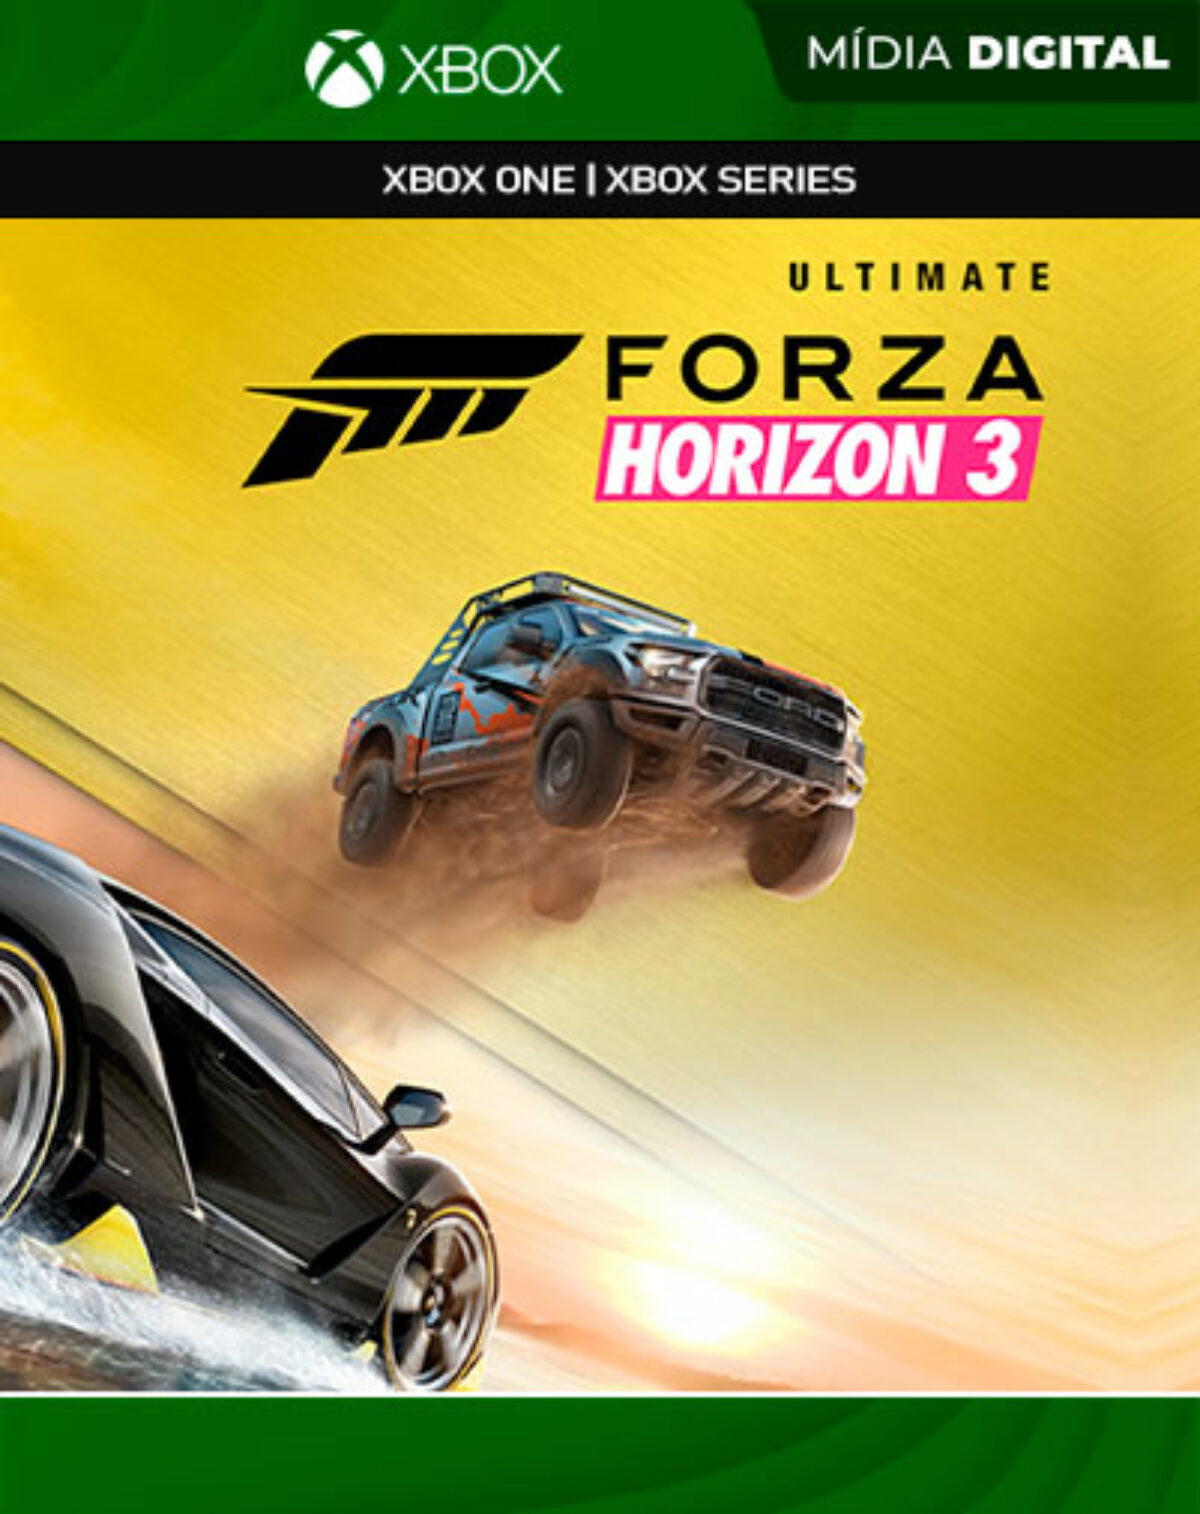 BGS 2016: Forza Horizon 3 mostra toda sua versatilidade; veja nossas  impressões!